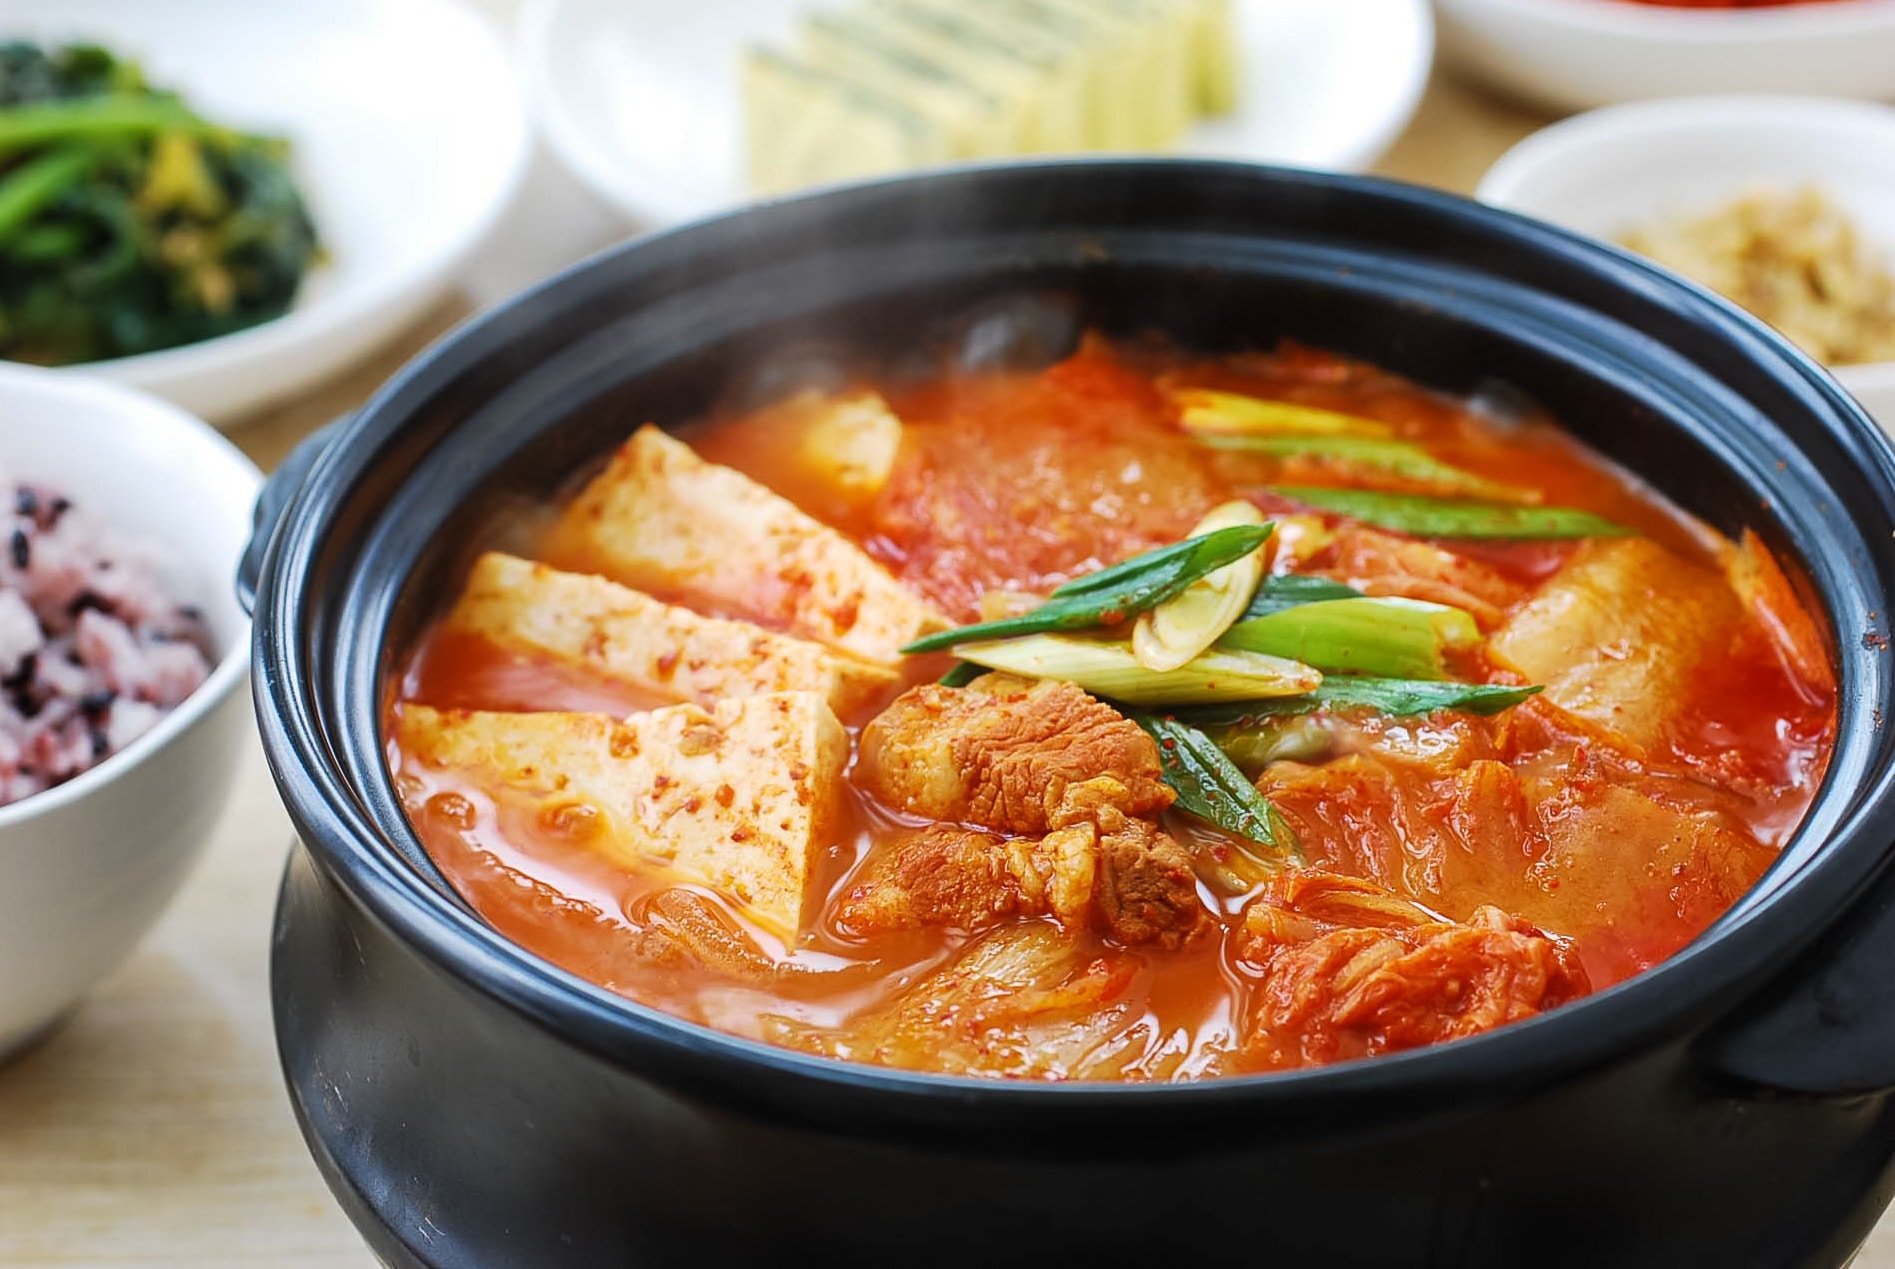 DSC 5089 3 - Kimchi Jjigae (Kimchi Stew)